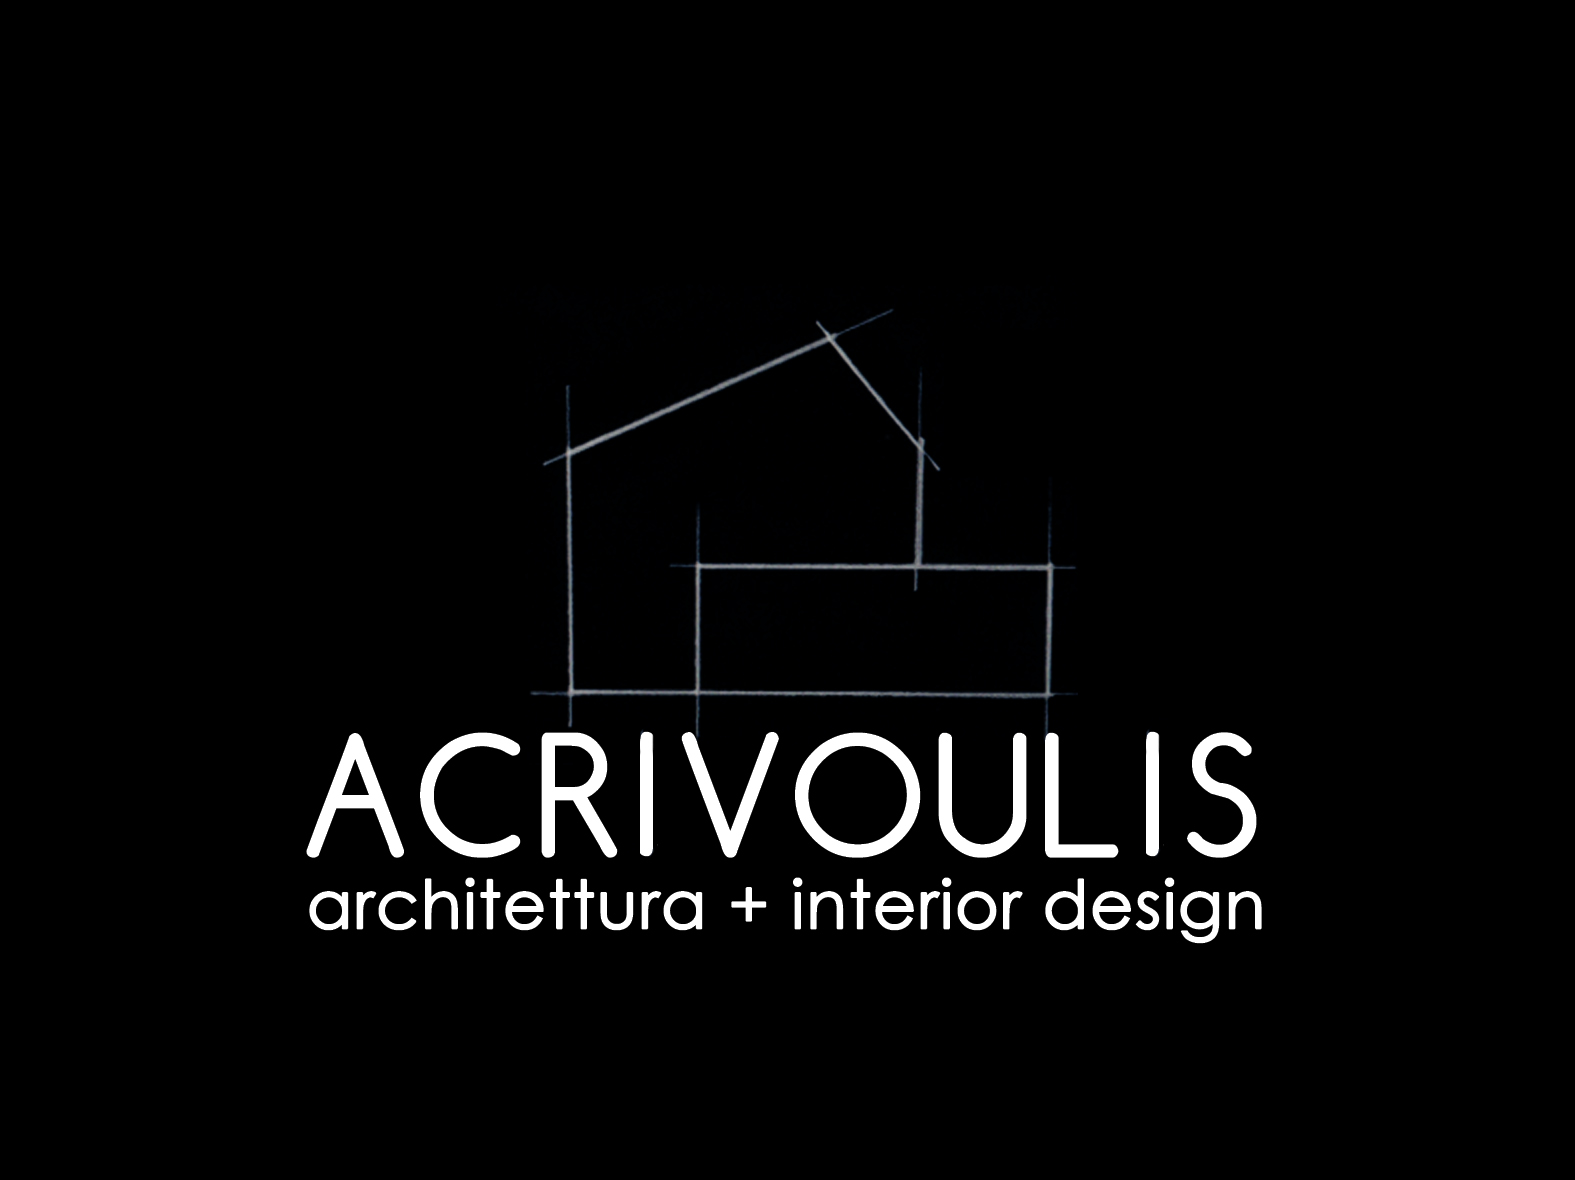 ACRIVOULIS architettura + interior design